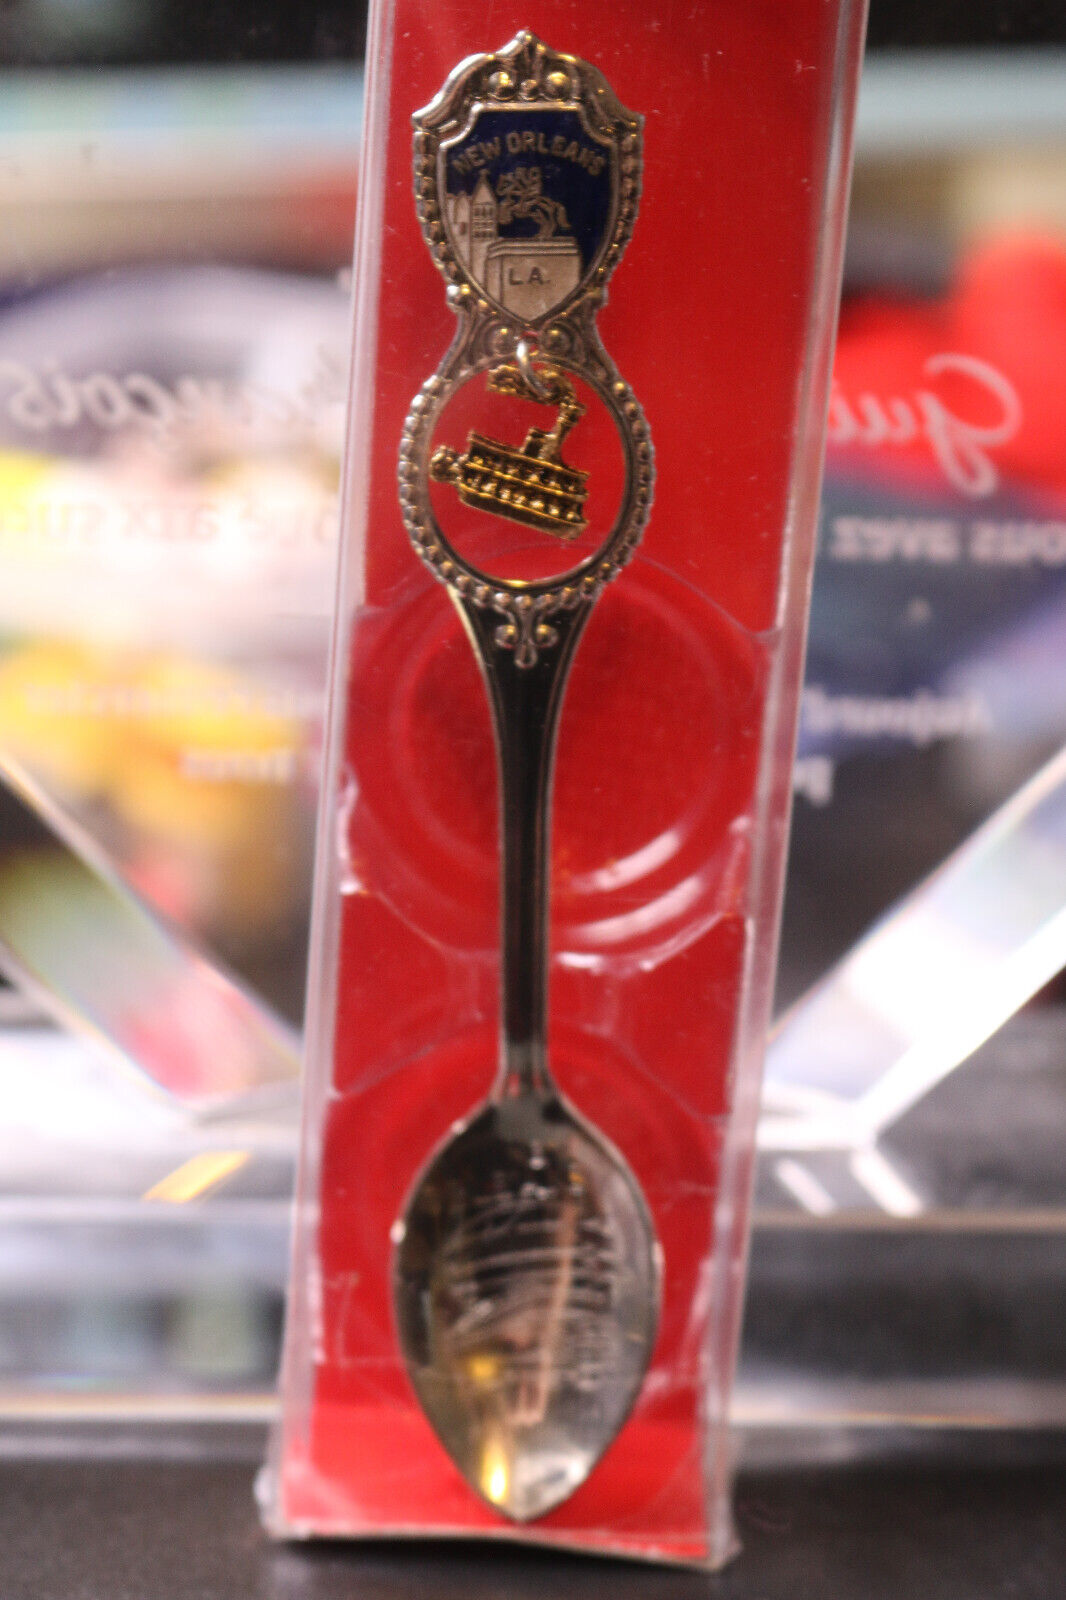 New Orleans L.A. Usa Collectors Vintage Spoon Souvenir Collectible